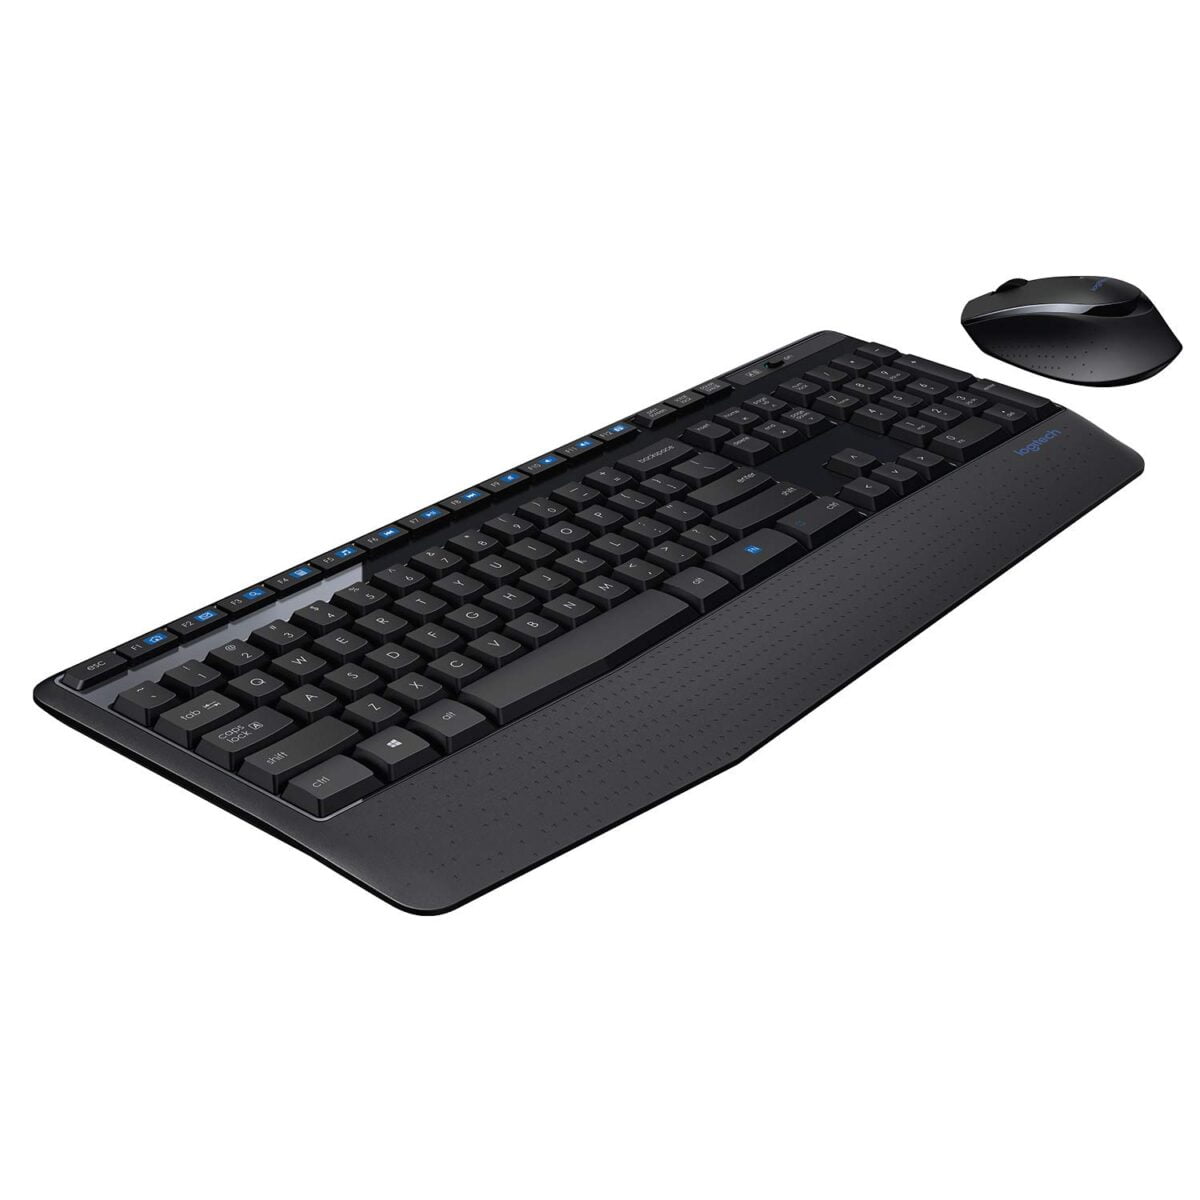 Logitech mk345 wireless keyboard and mouse set 1 logitech mk345 wireless keyboard and mouse set